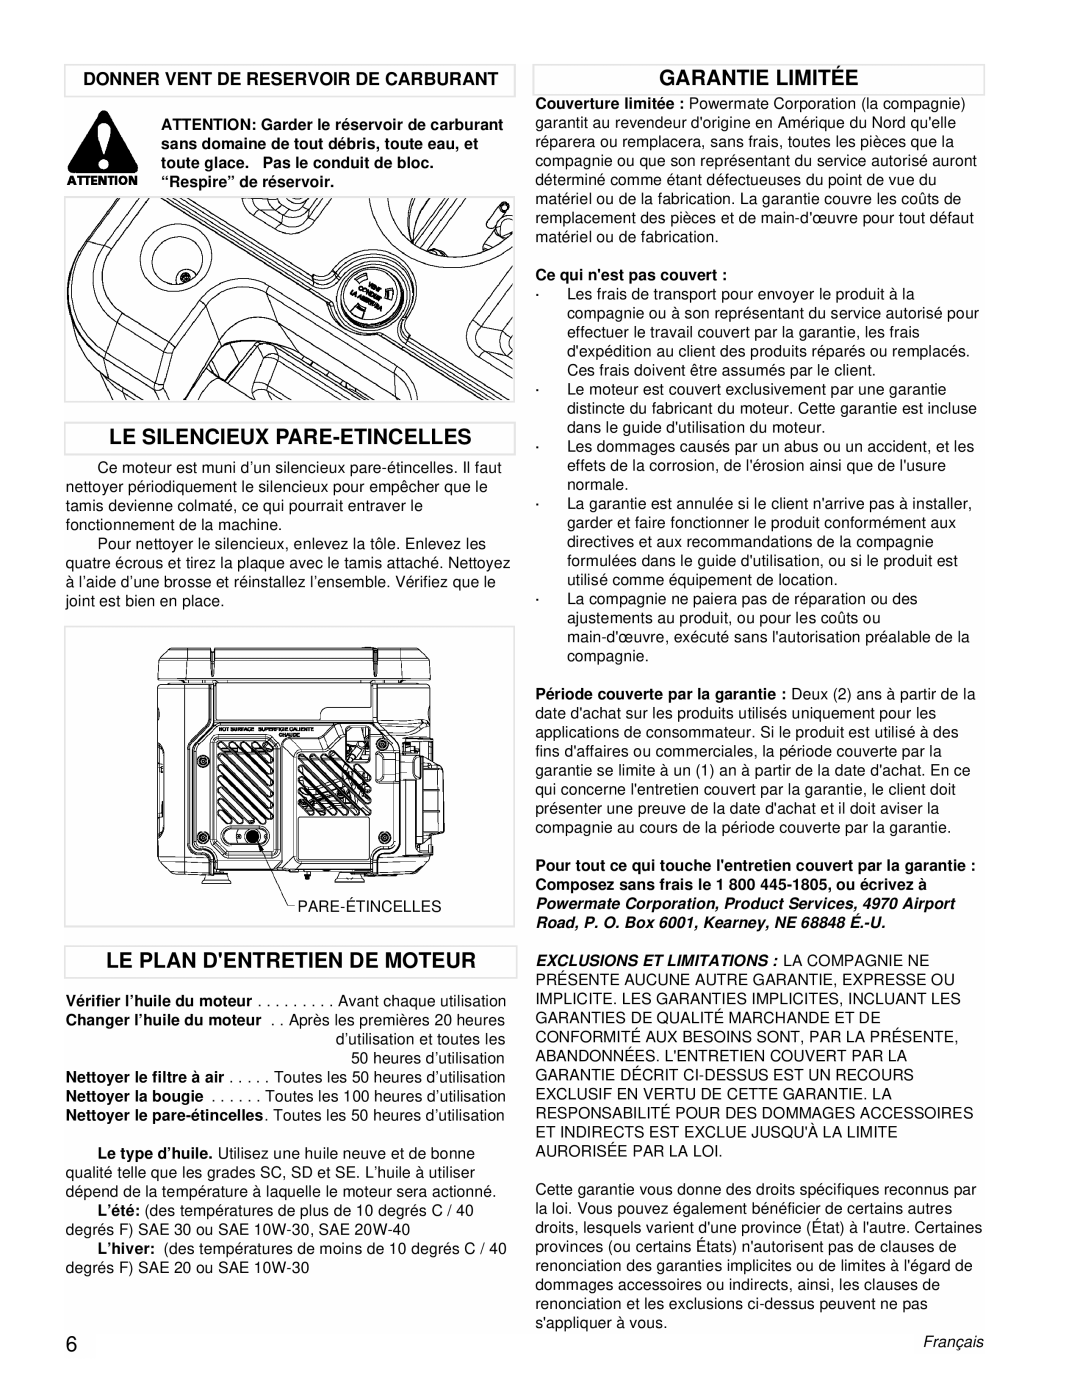 Powermate PMC431800.01 manual Le Silencieux Pare-Etincelles, Le Plan Dentretien De Moteur, Garantie Limitée, Français 